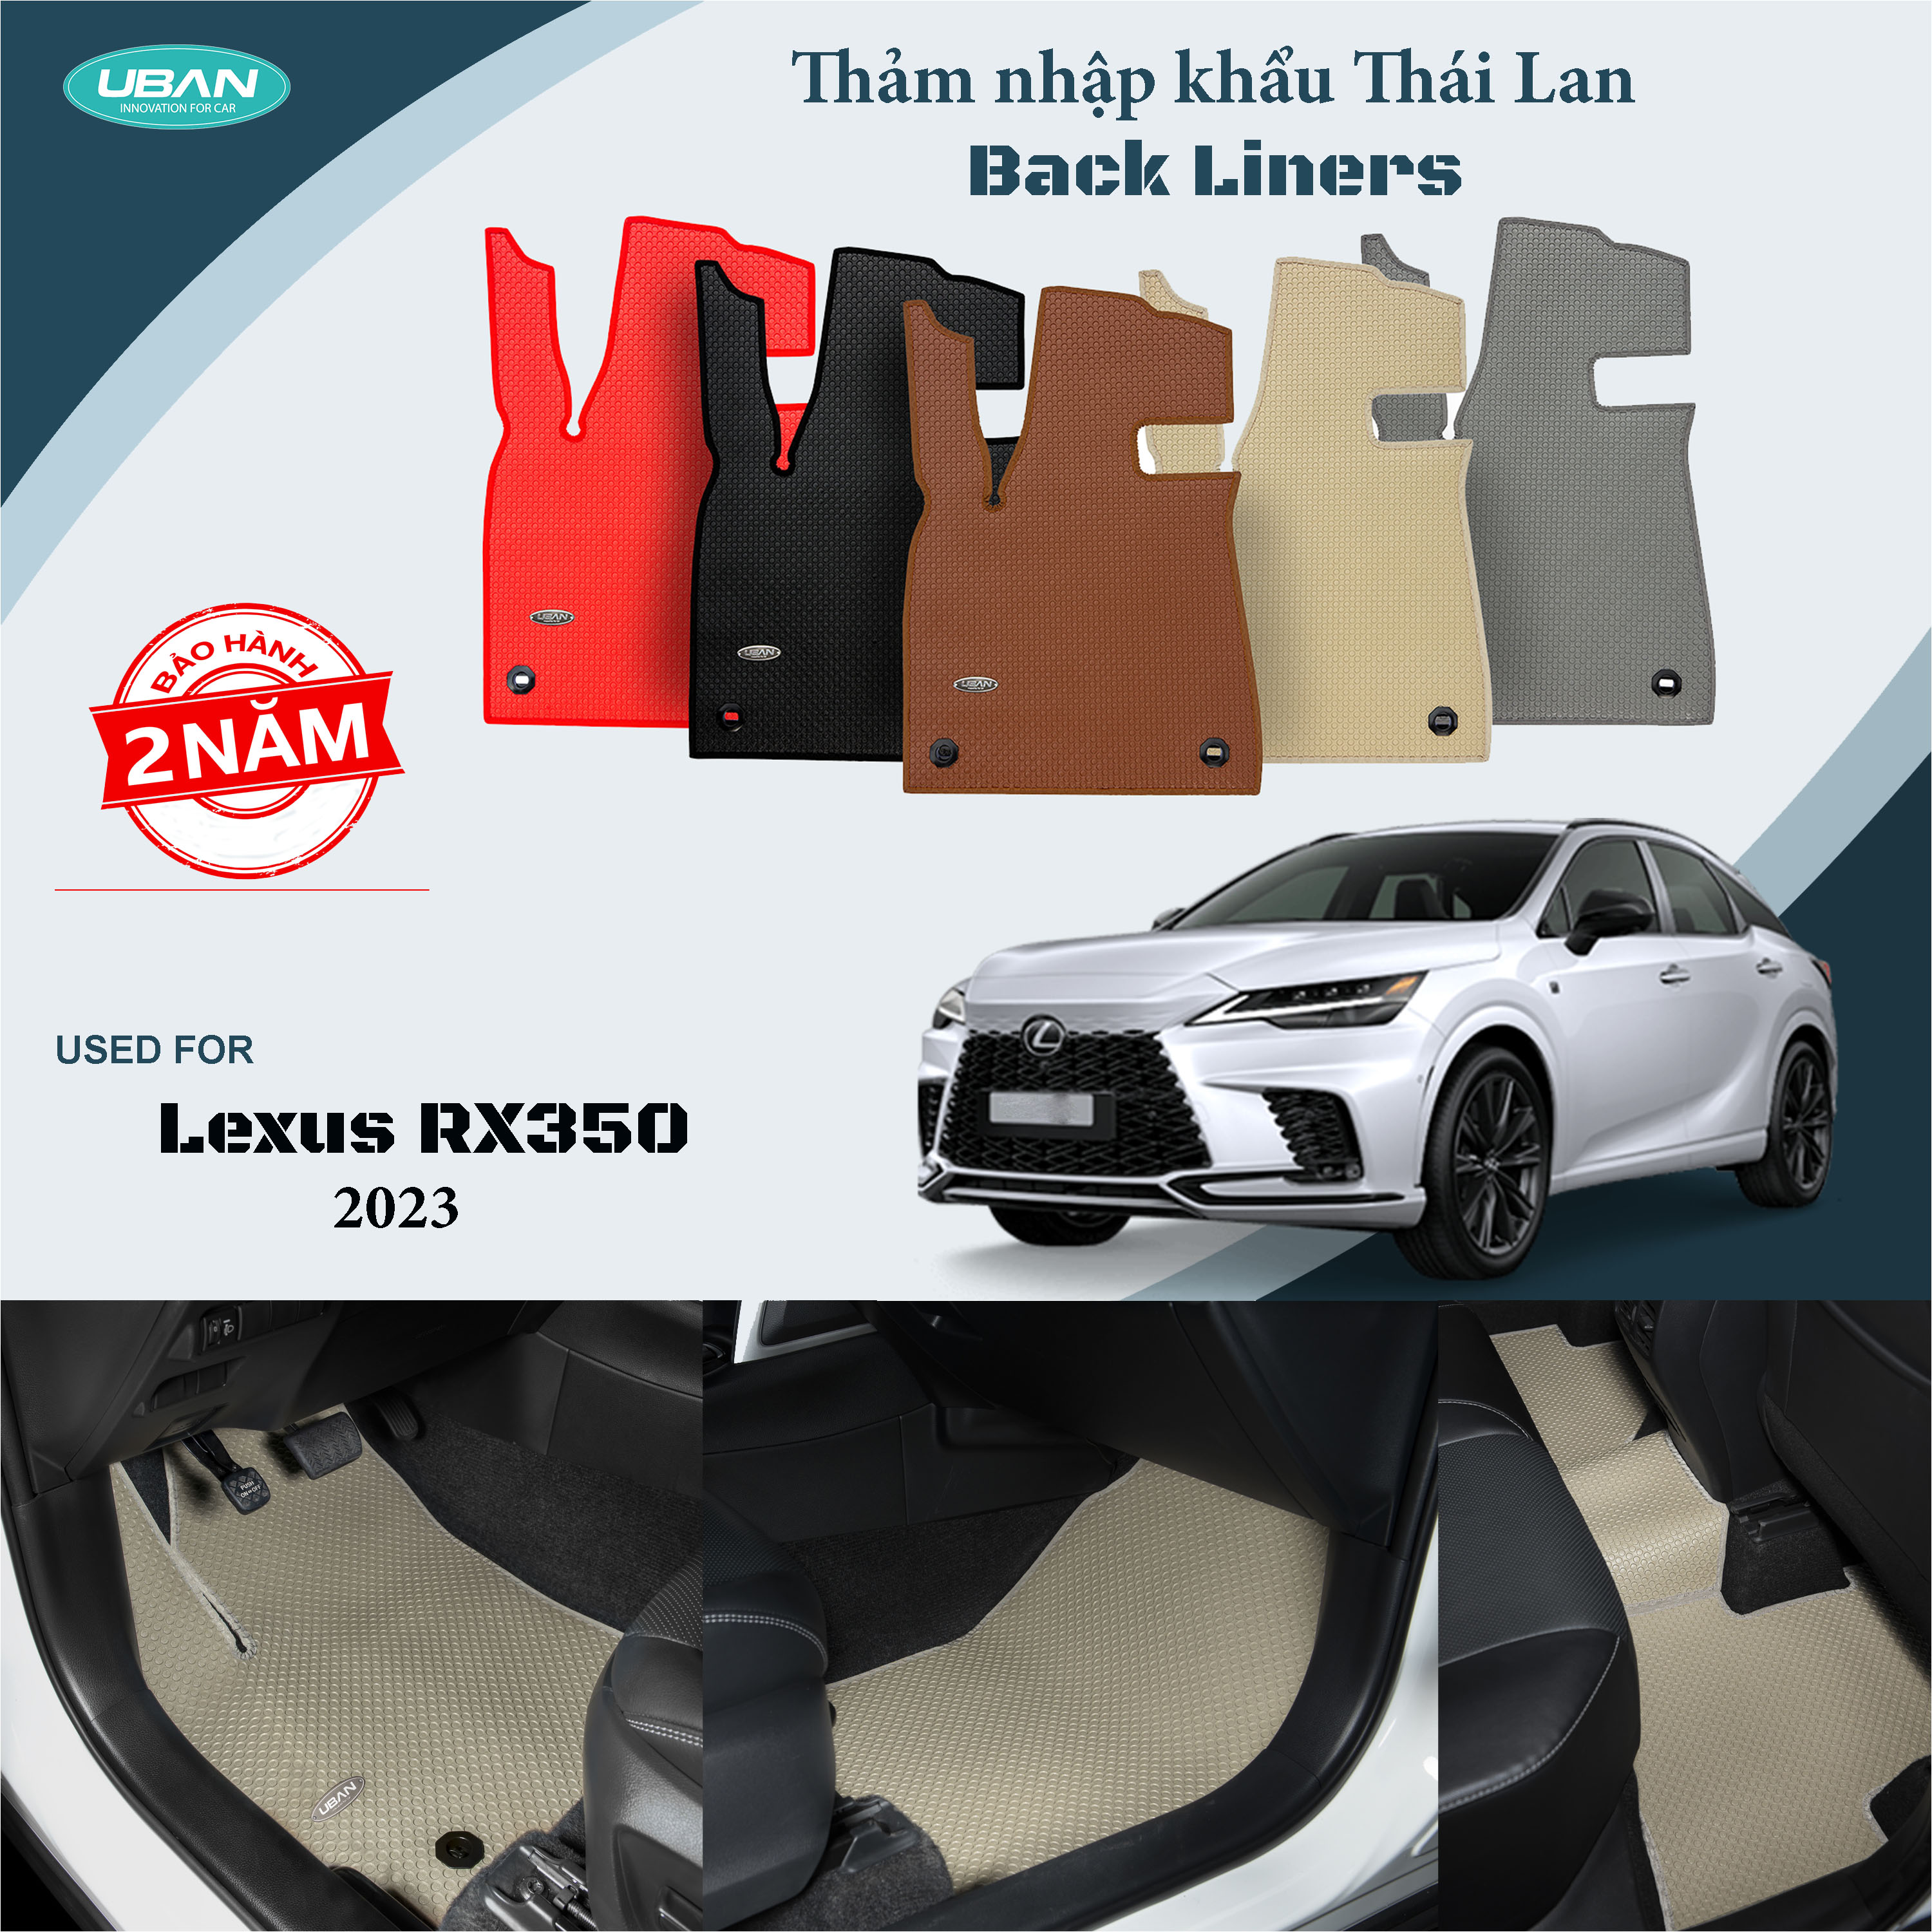 Thảm lót sàn ô tô UBAN cho xe Lexus RX350 2023 - Nhập khẩu Thái Lan